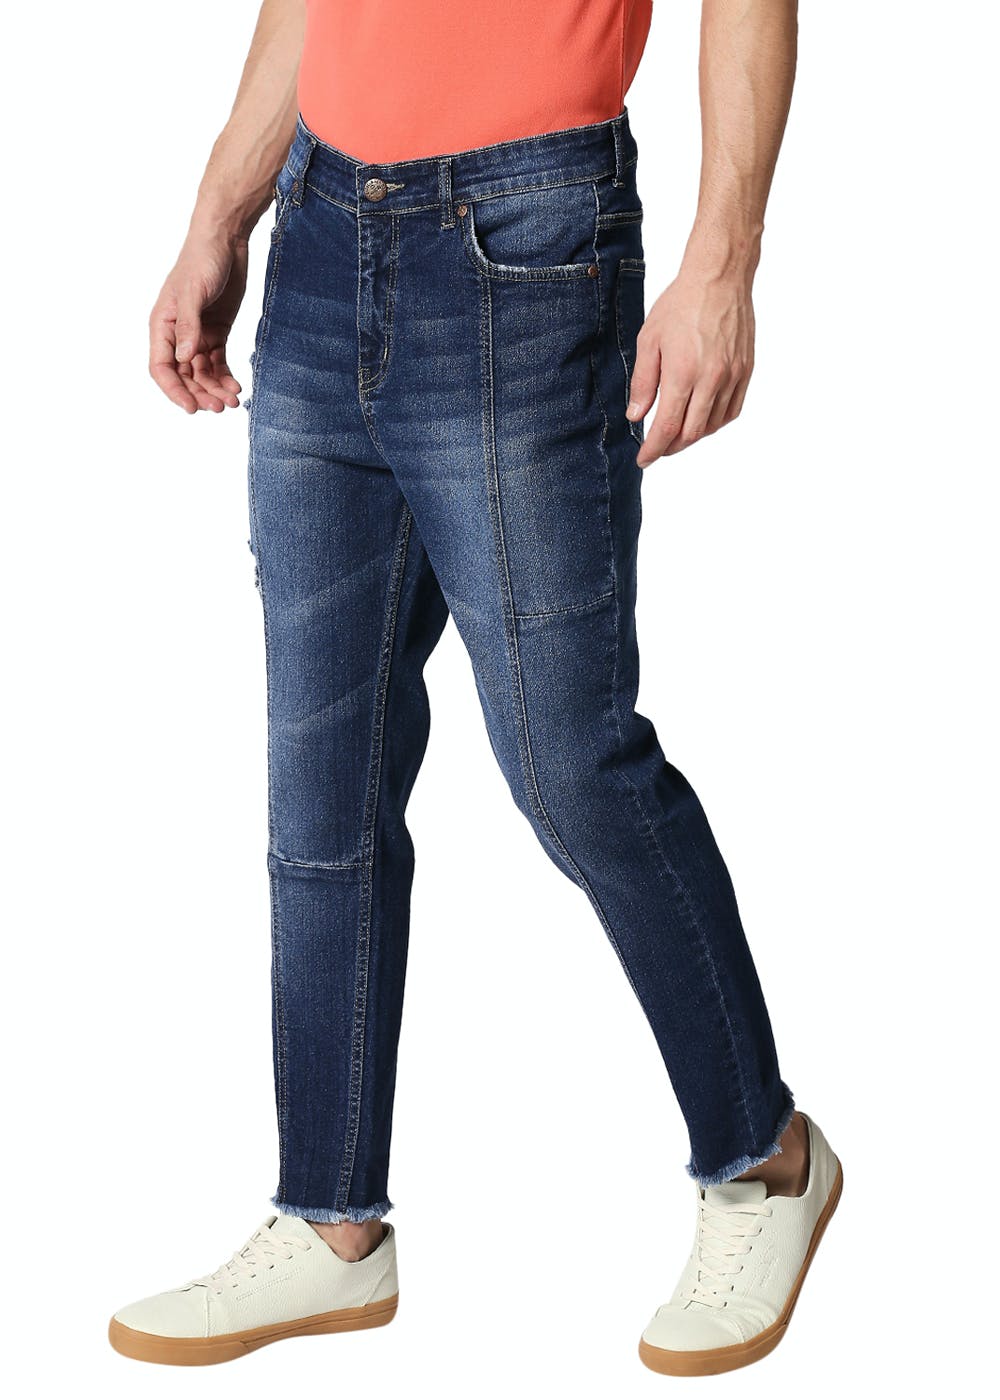 Denim Trouser Jeans  Railroad Stripes  BIG BUD PRESS